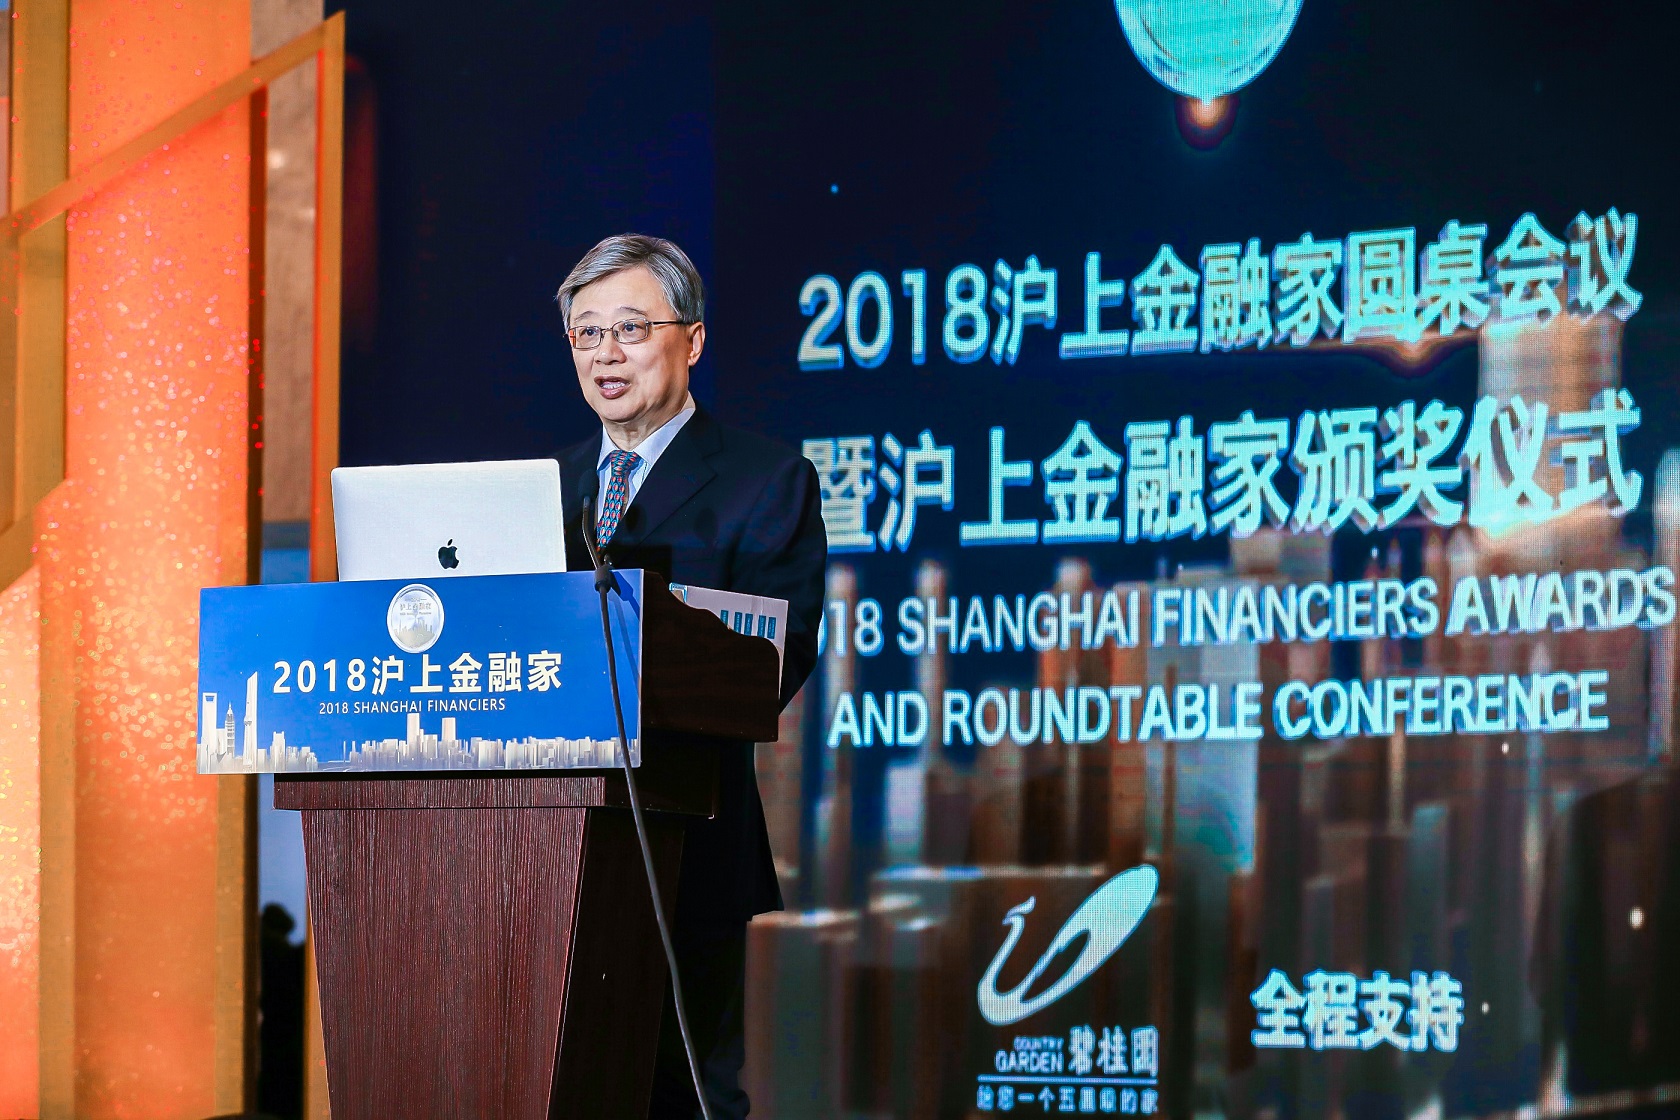 中欧国际工商学院教授、原院长朱晓明发表主题演讲